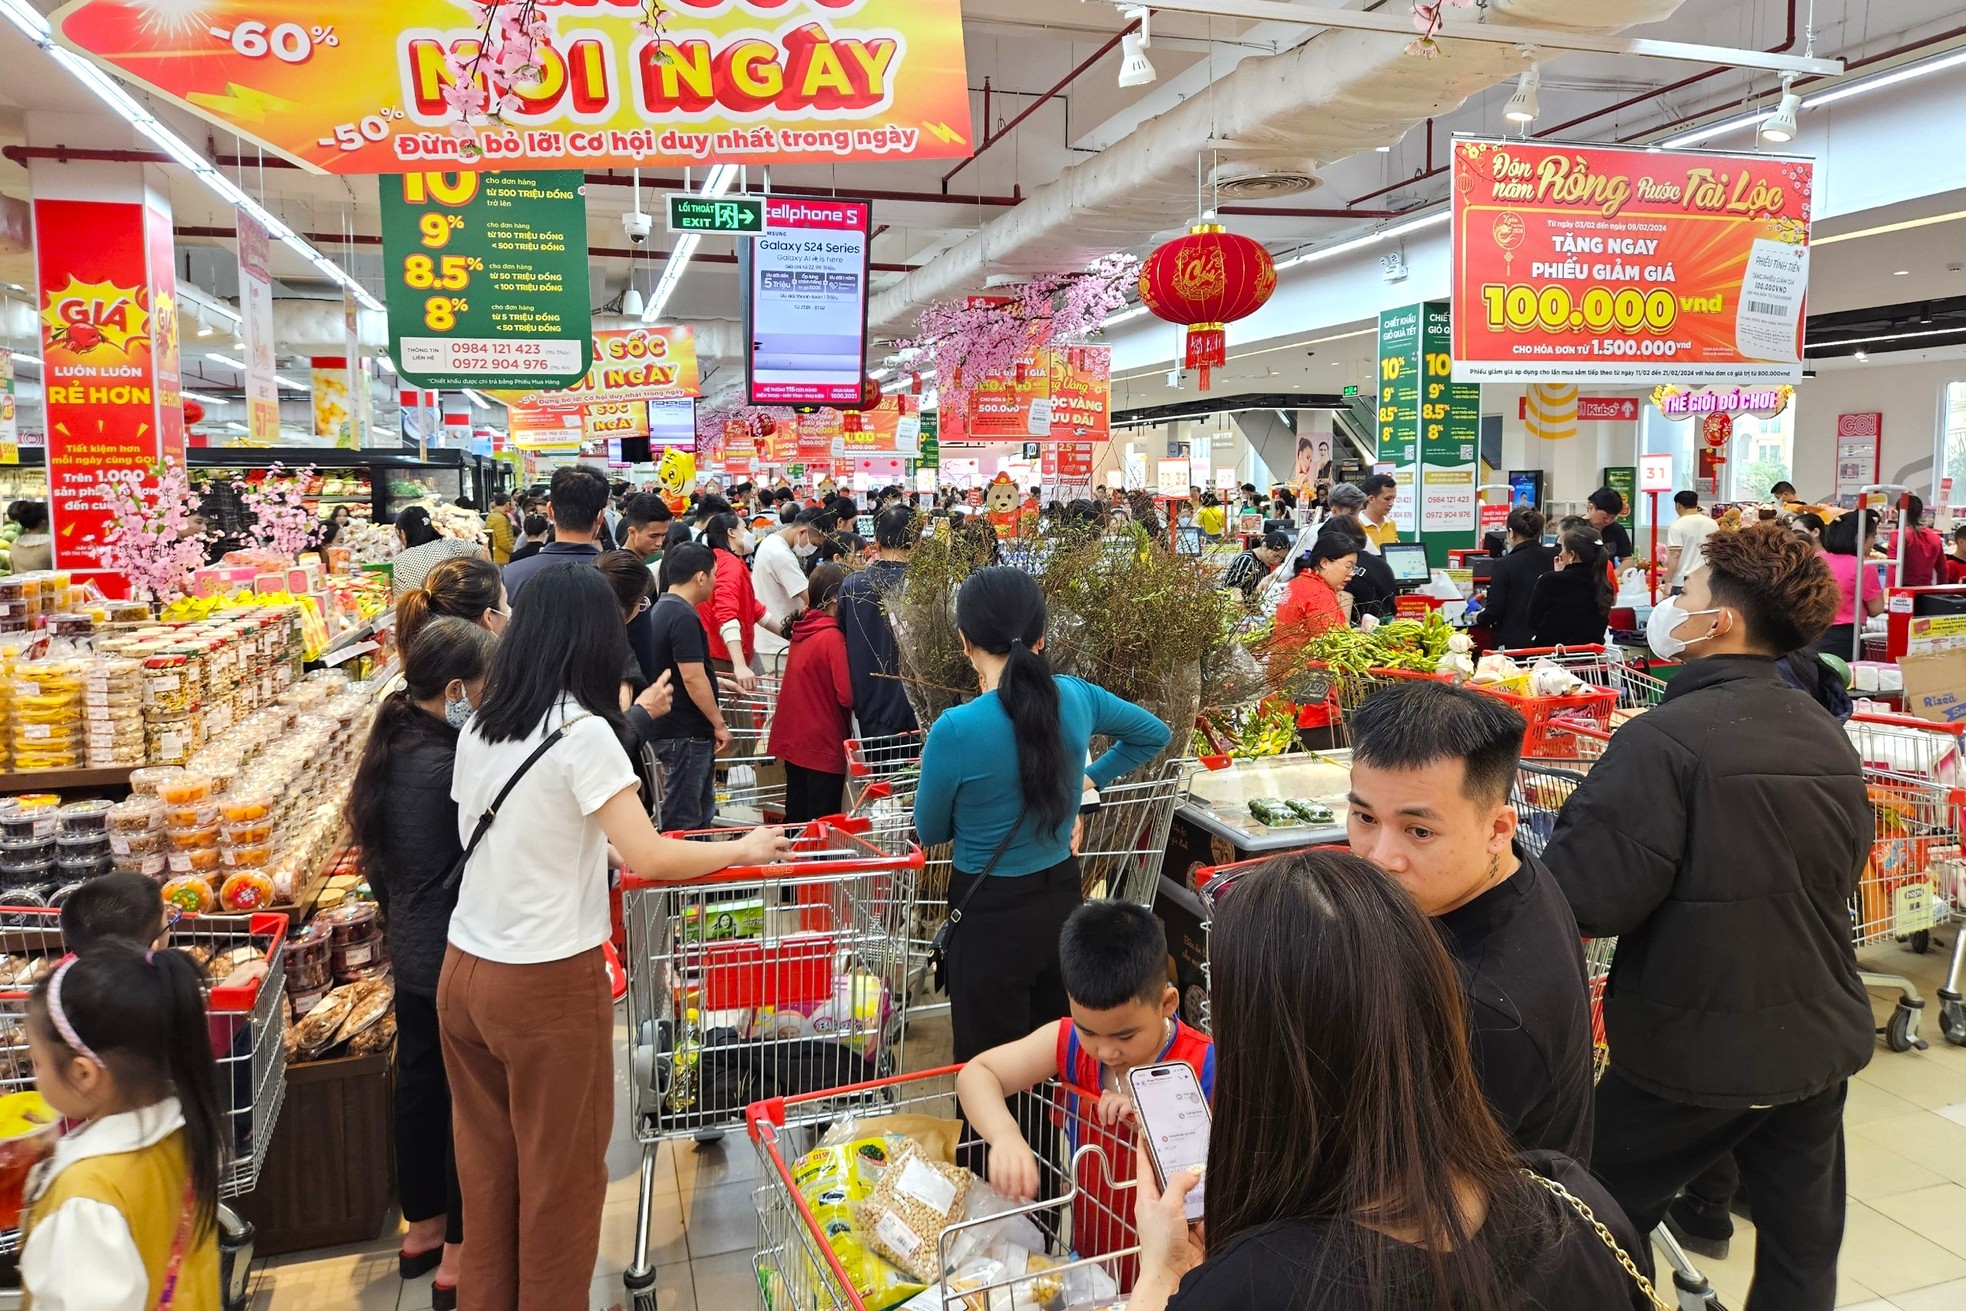 Cảnh trái ngược giữa siêu thị và chợ truyền thống ngày giáp Tết - Ảnh 7.